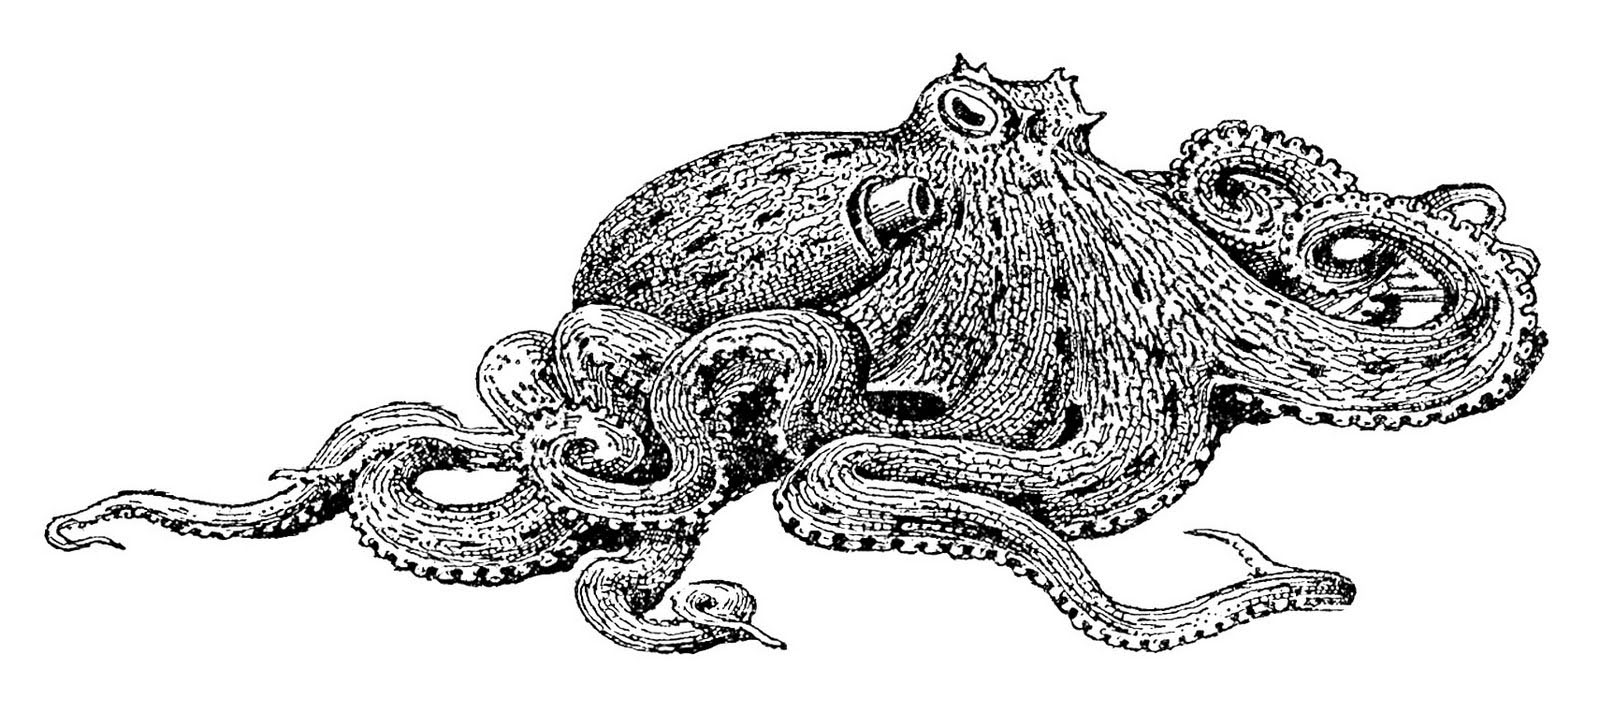 Octopus Laying on Ocean Floor Vintage Image